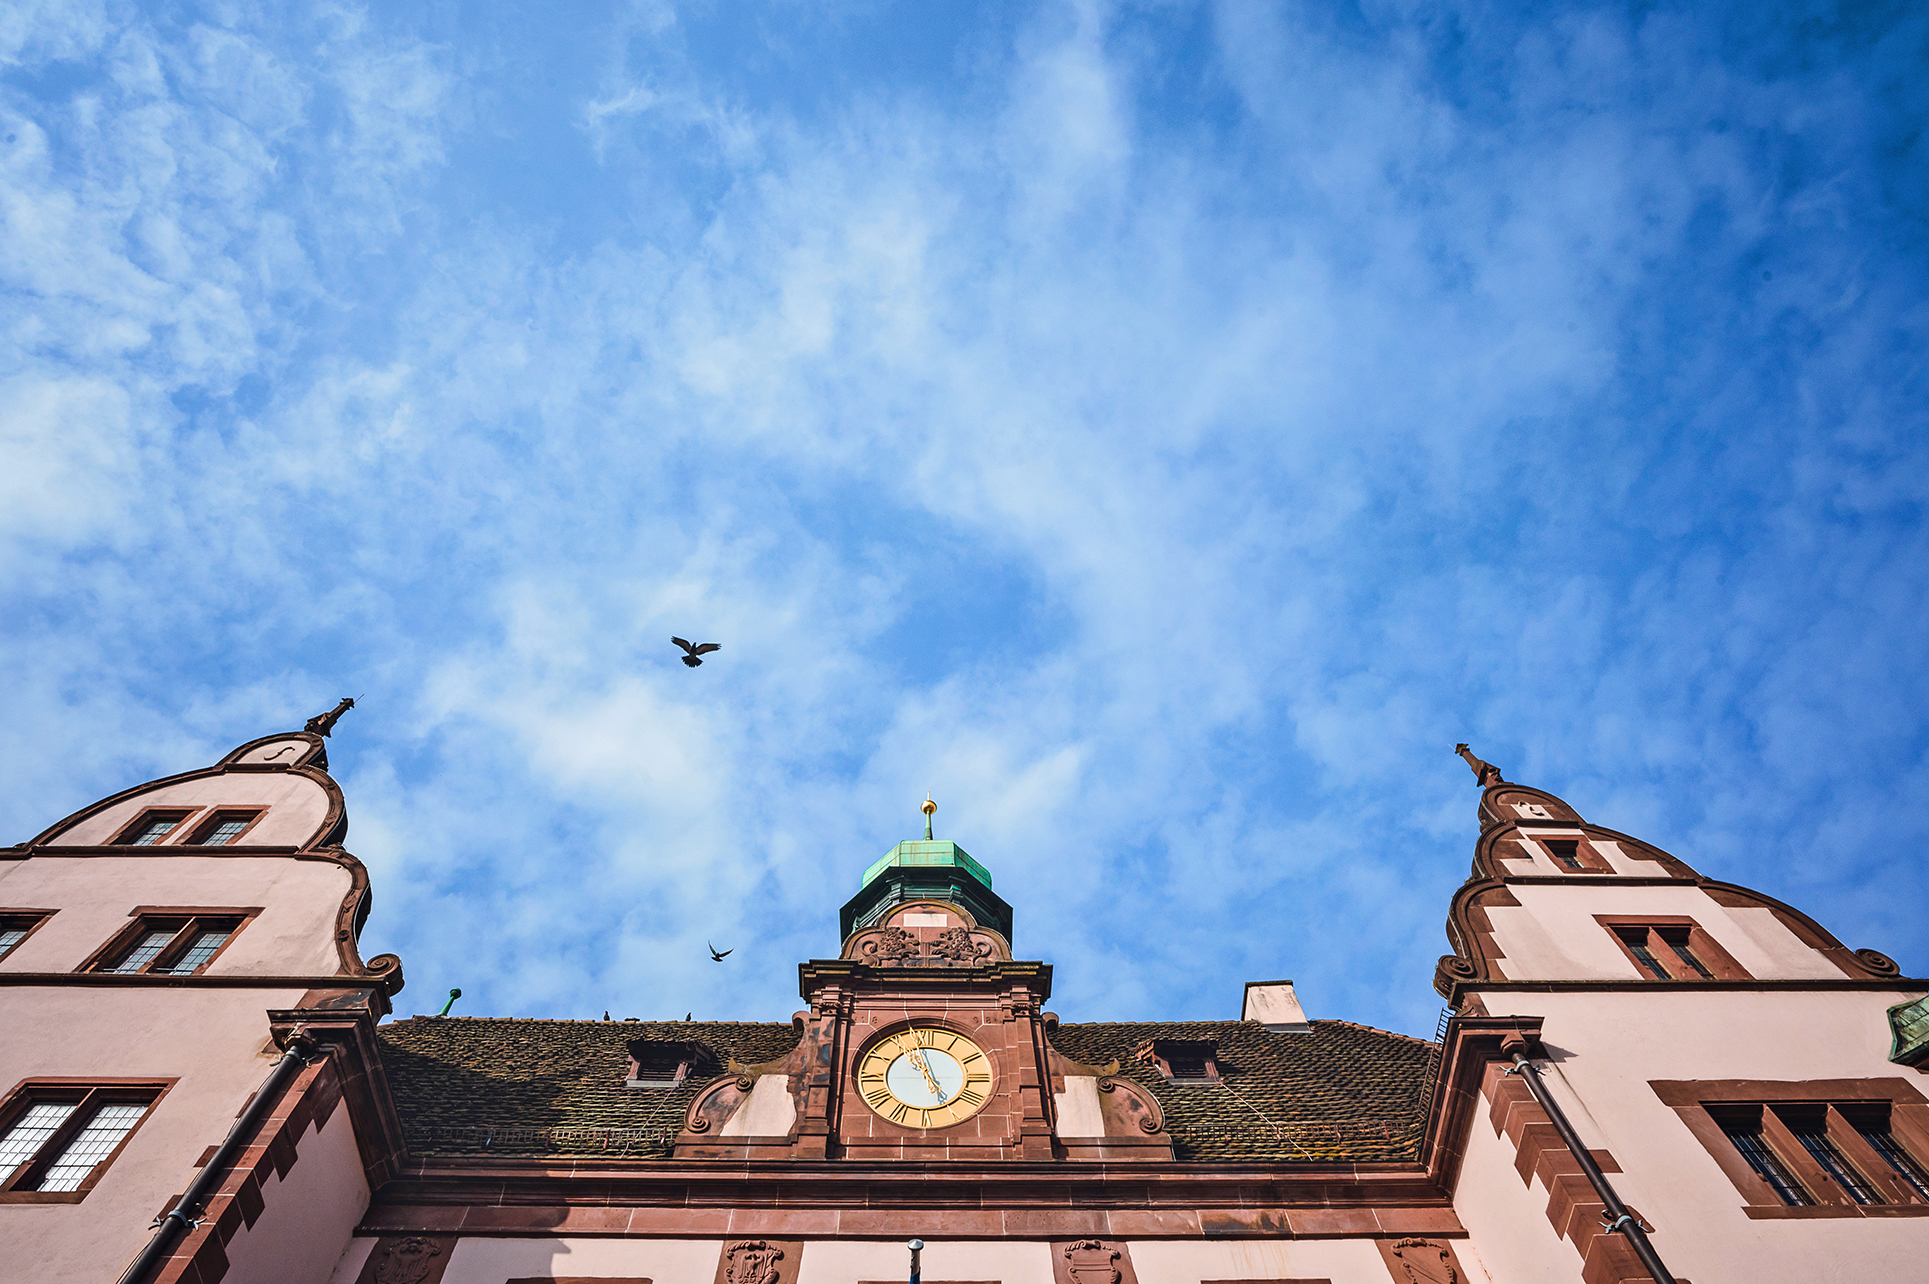 Ein Detailfoto des Alten Rathauses in Freiburg an einem sonnigen Tag mit blauem Himmel.